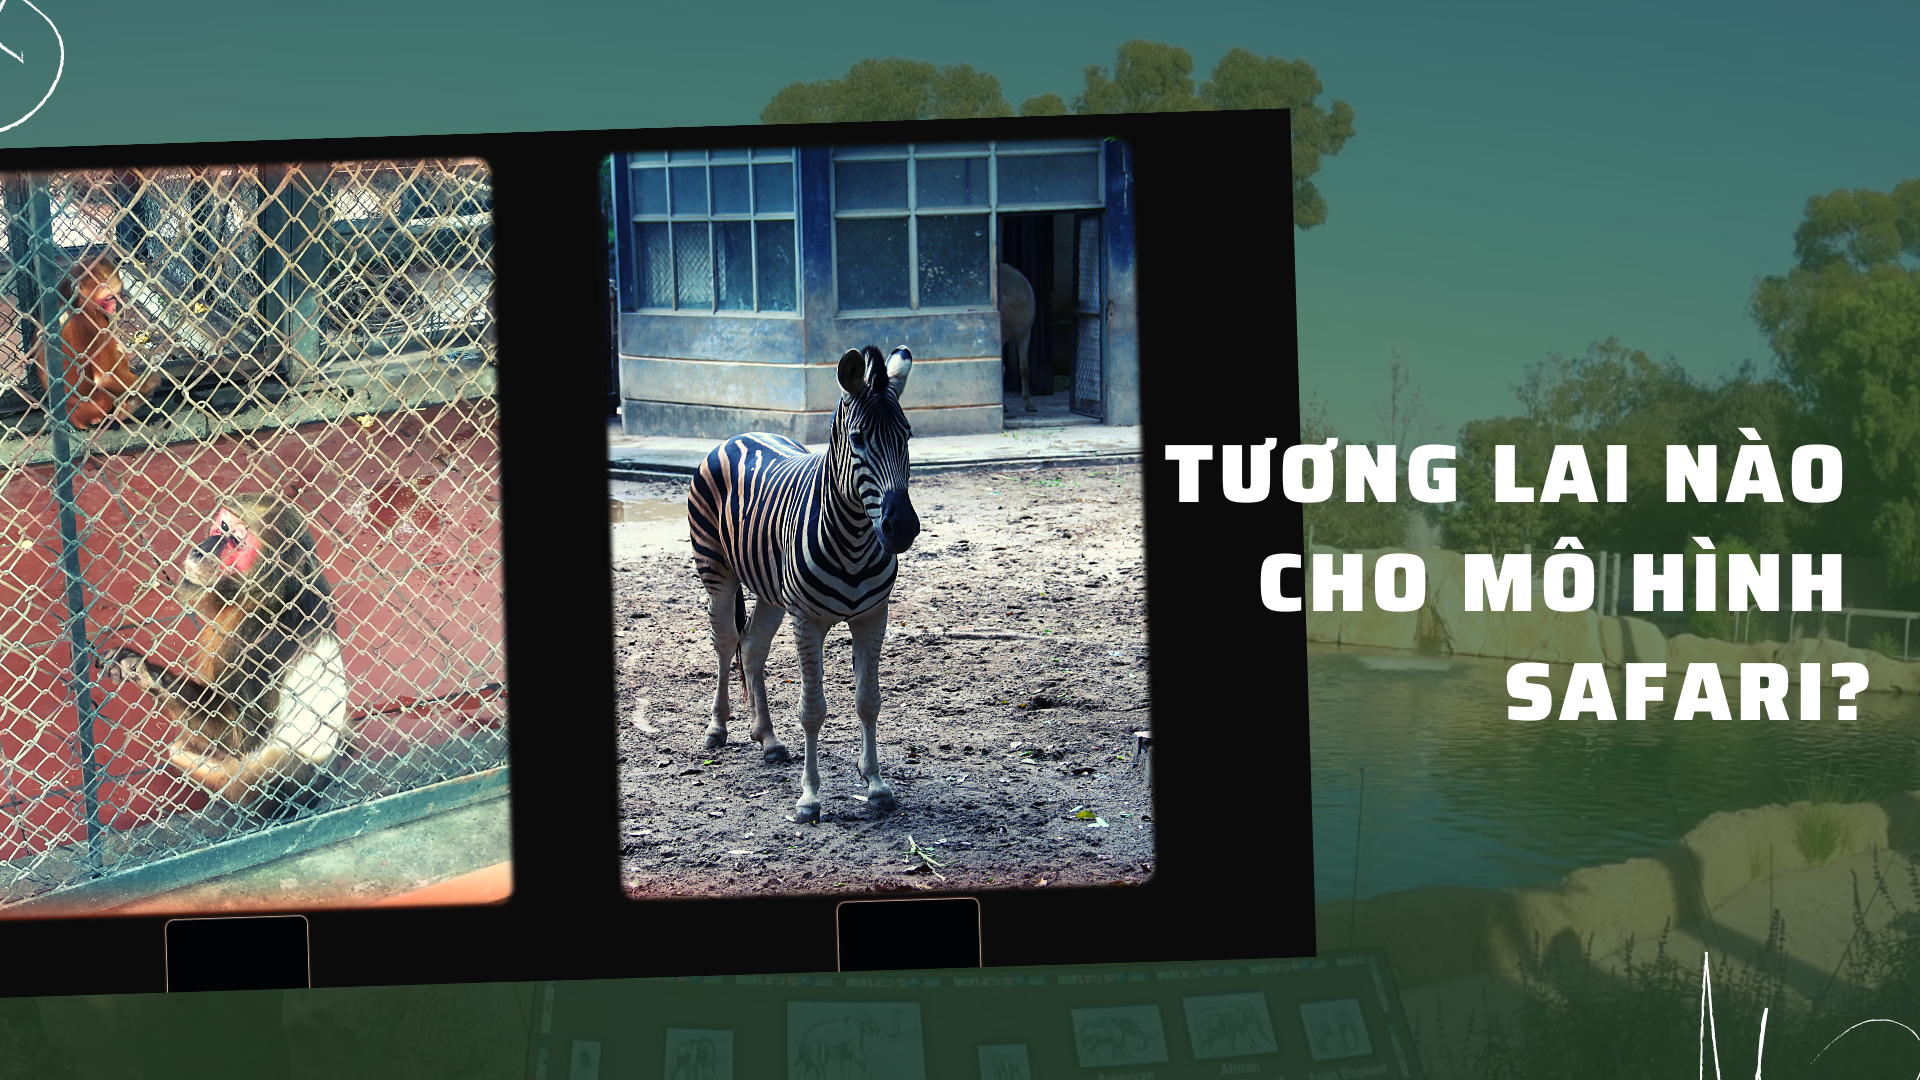 Vườn thú Hà Nội: Tương lai nào cho mô hình safari?